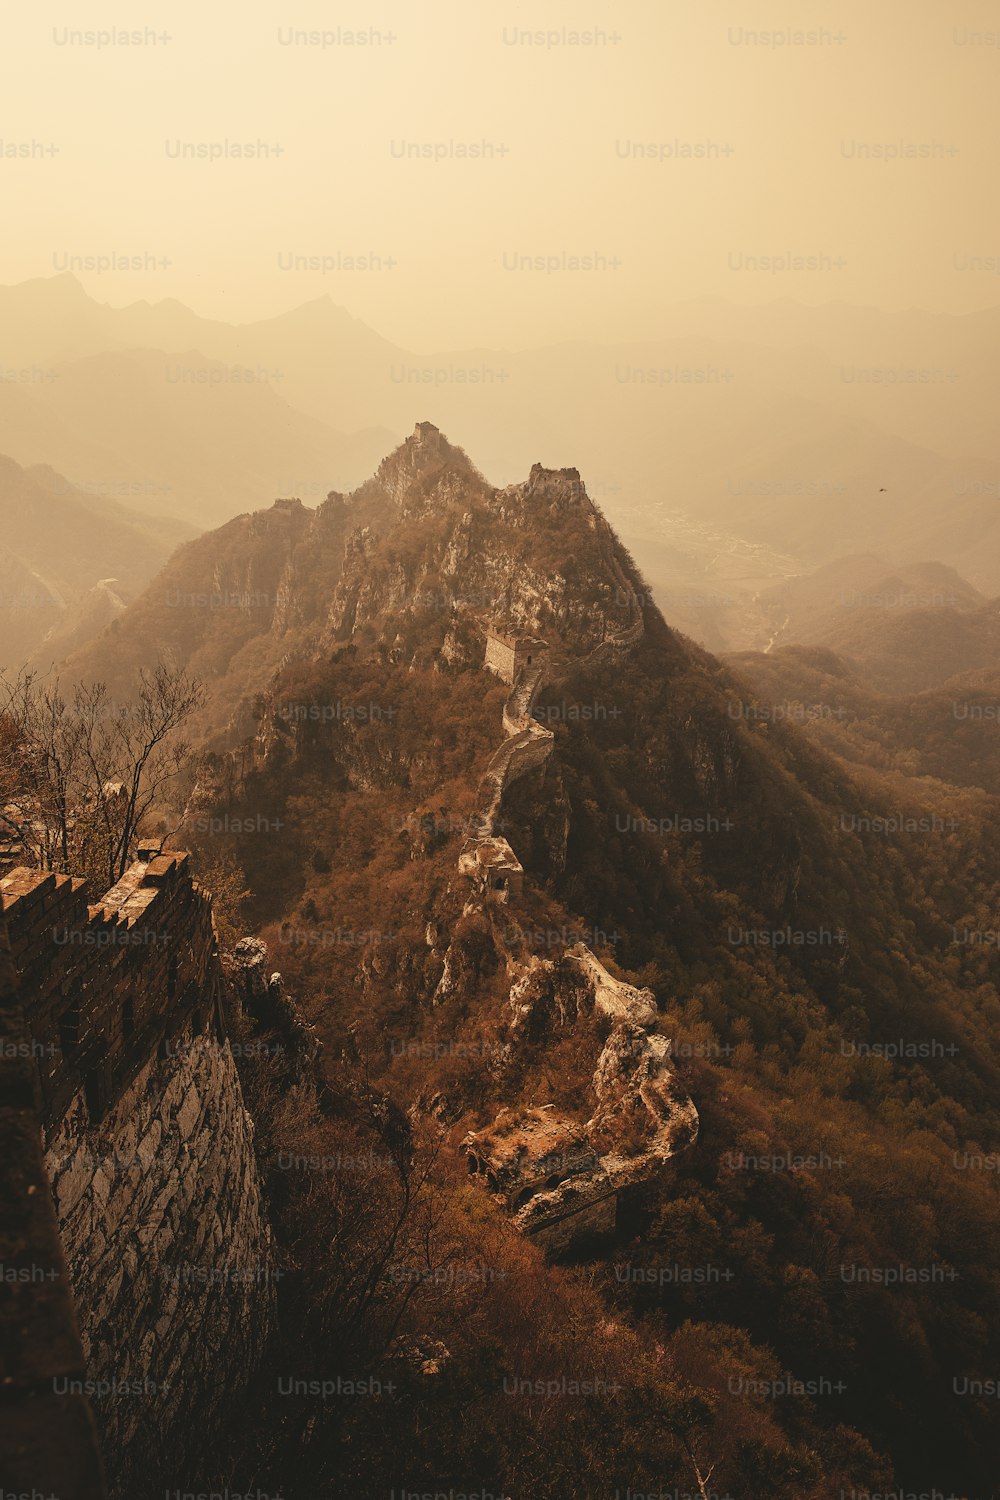 Una vista de la Gran Muralla China desde la cima de una montaña